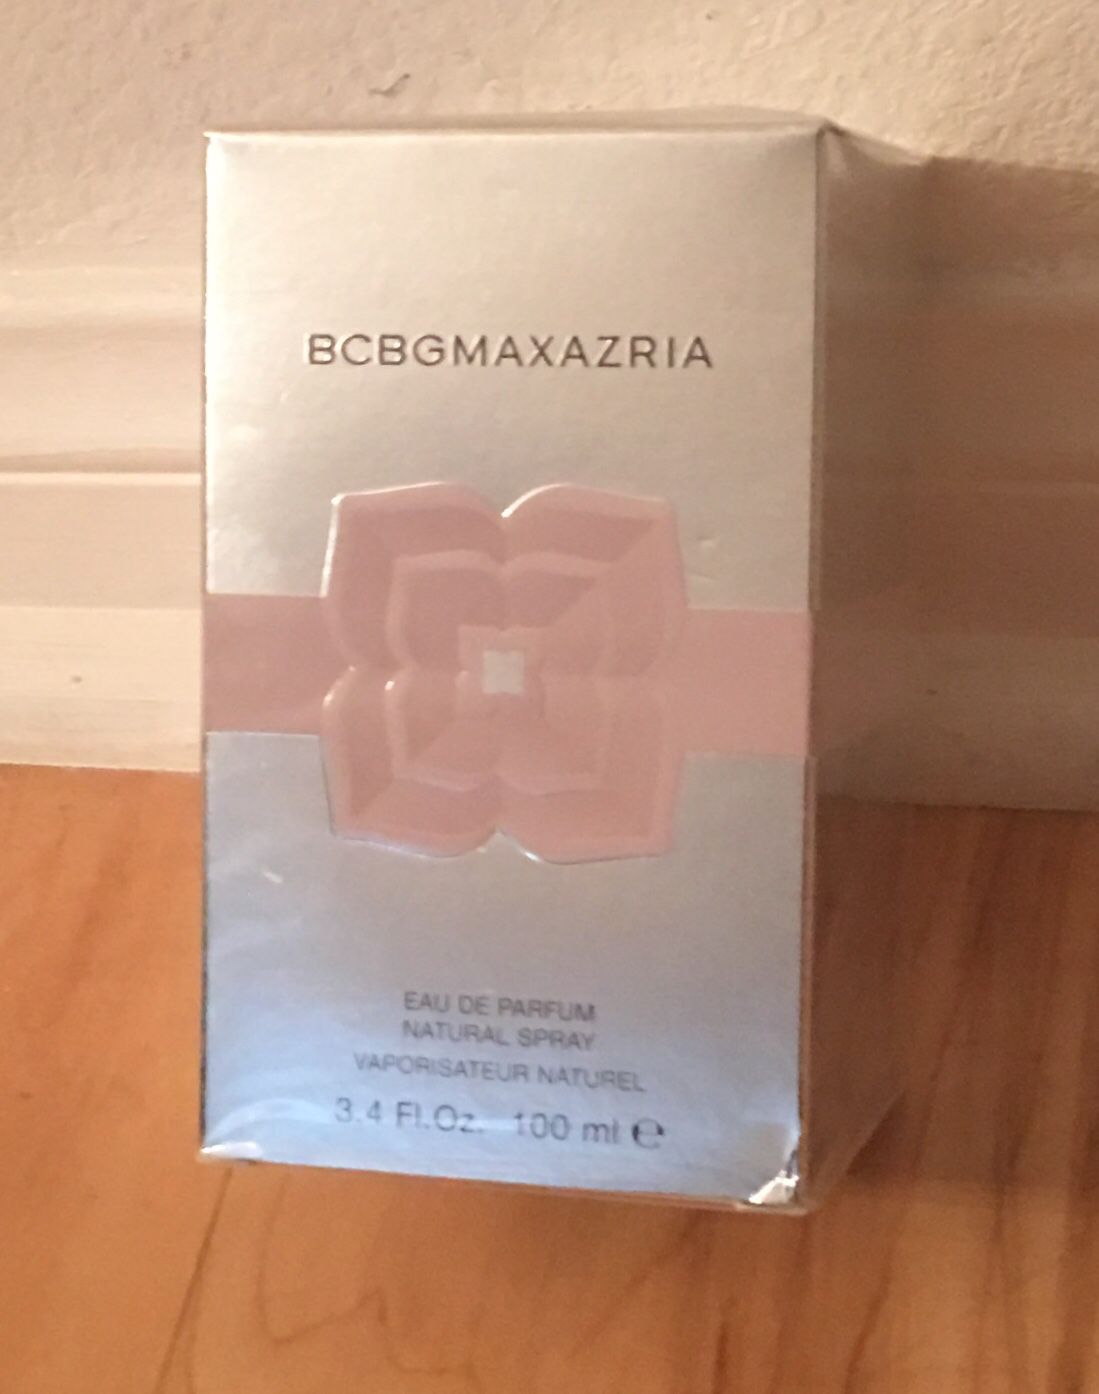 Un-open BCBG Max Azria 3.4 FL Oz perfume